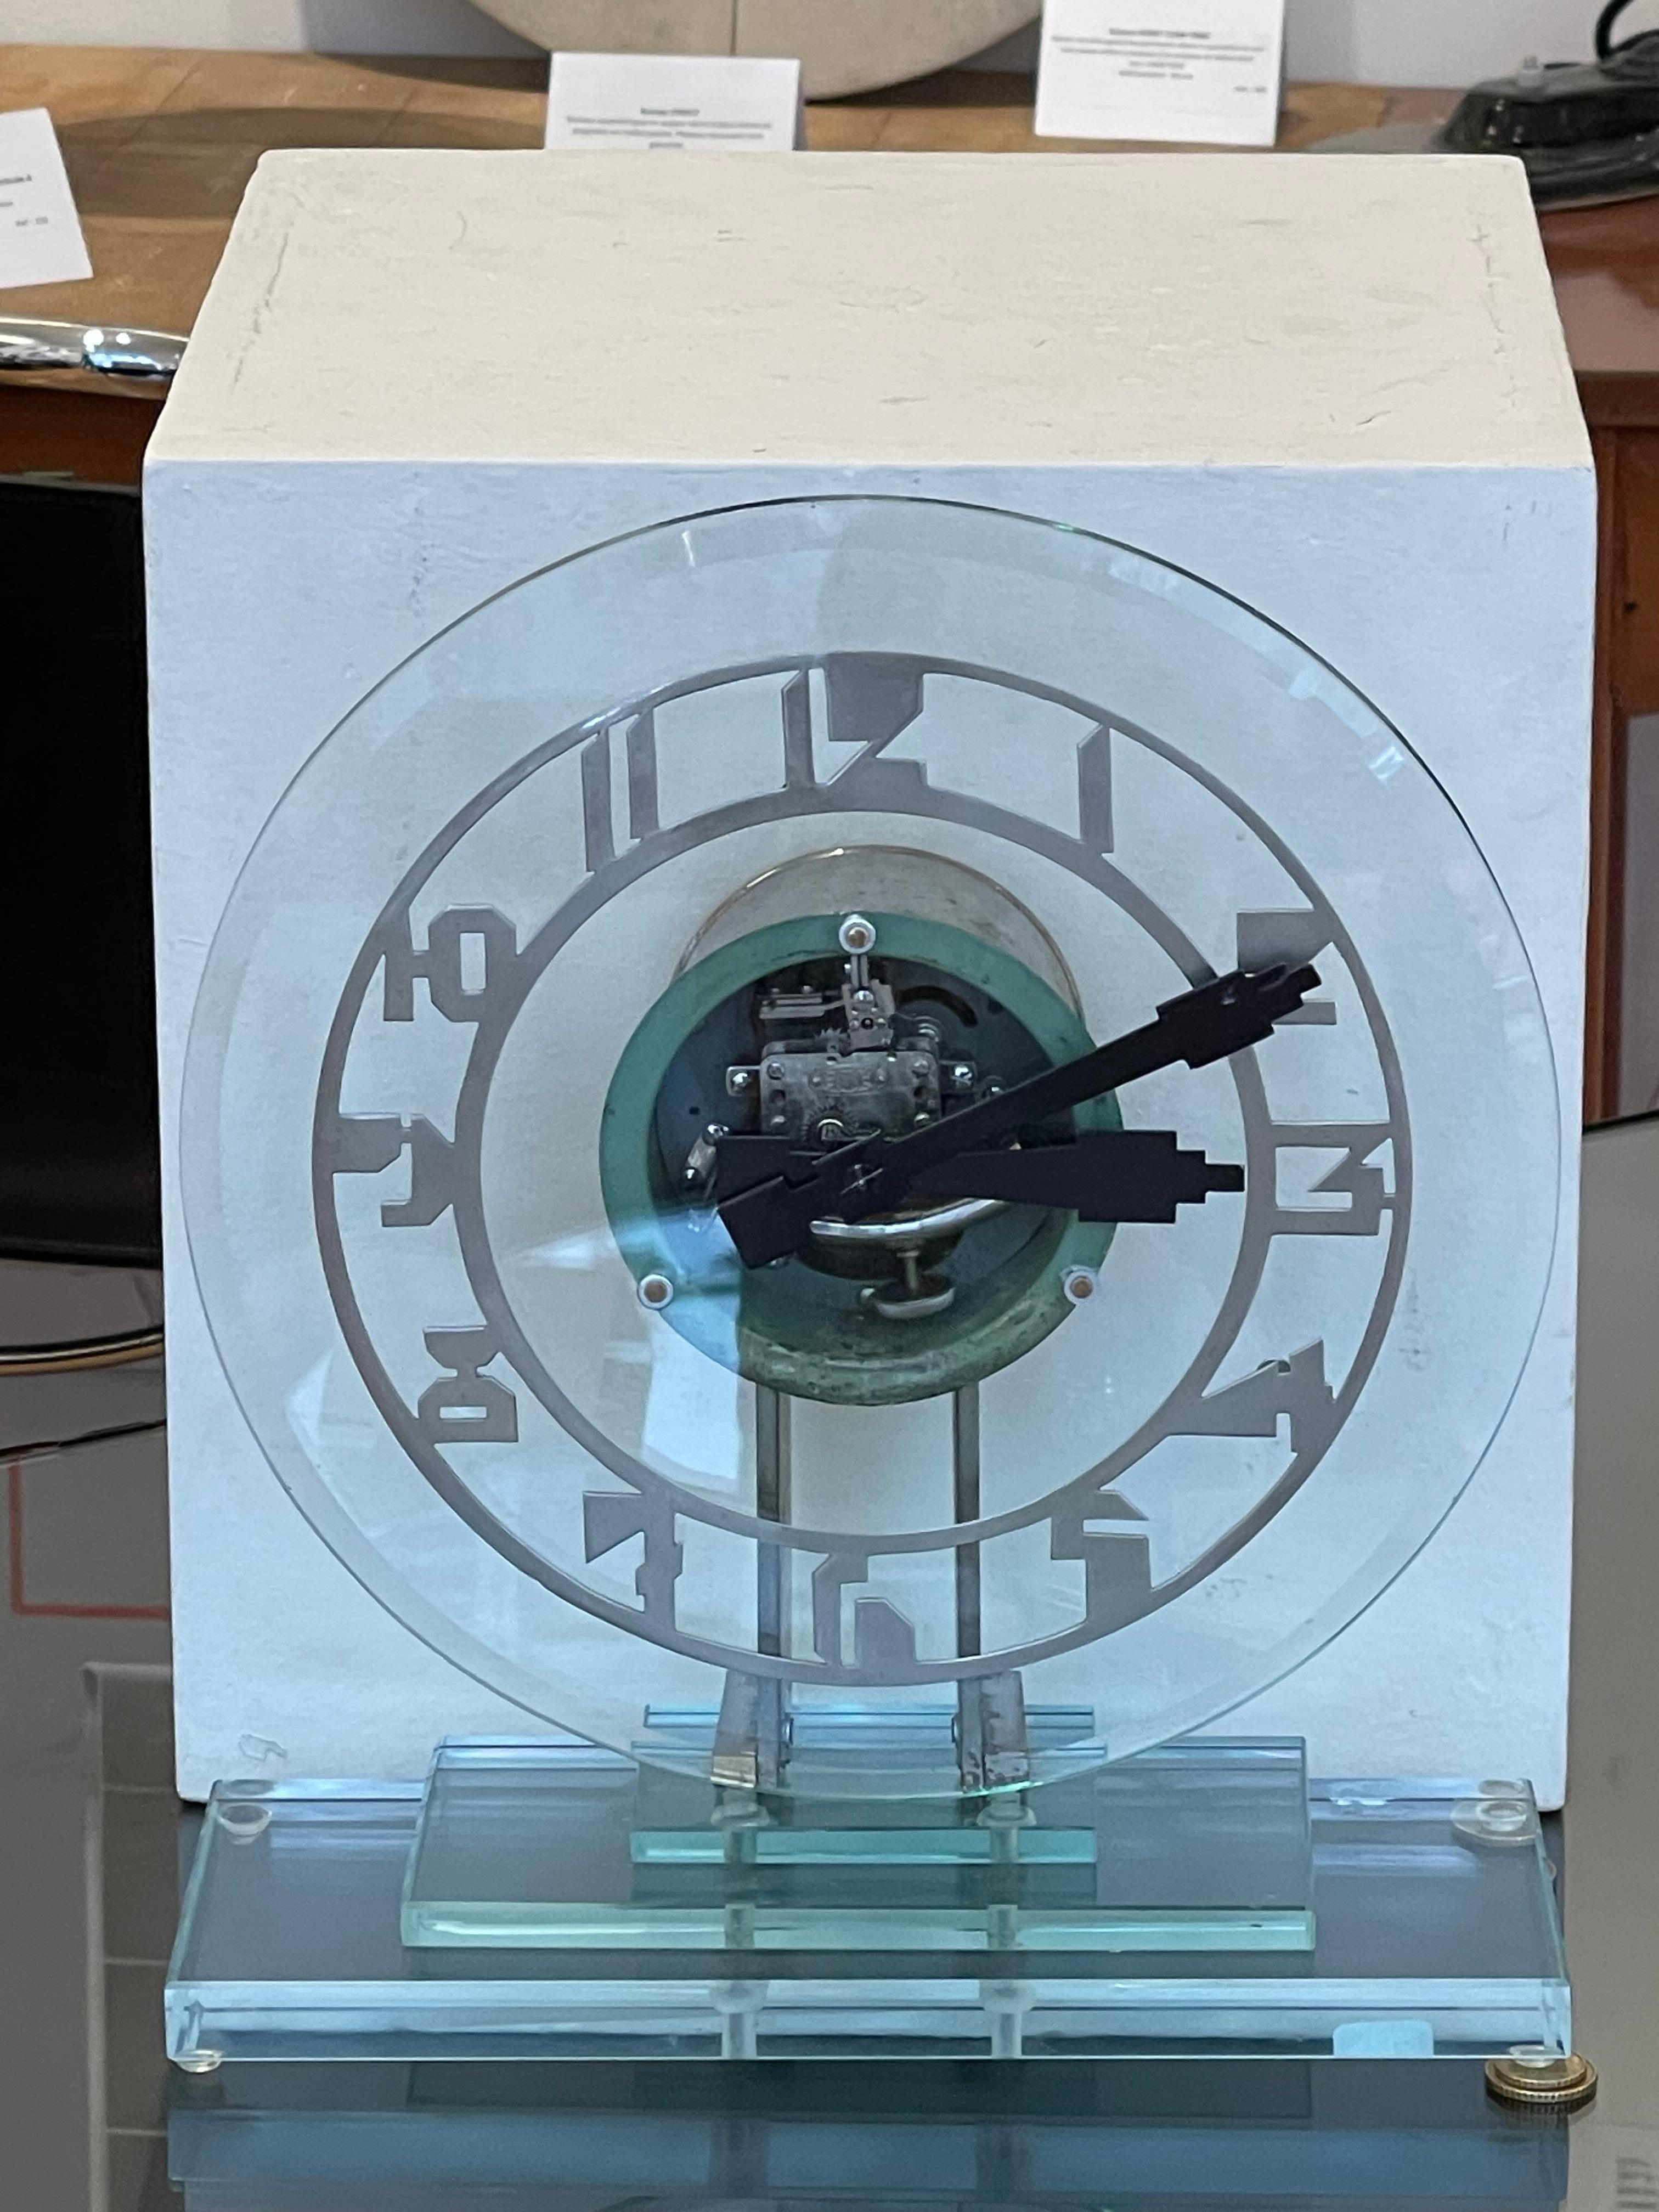 Exceptionnel pendule électrique (alimenté par une pile ronde standard LR14) Art déco en verre transparent avec boîtier rond nickelé sur un socle également en verre à trois étages. 

Le cadran, typiquement Art déco, est transparent et laisse